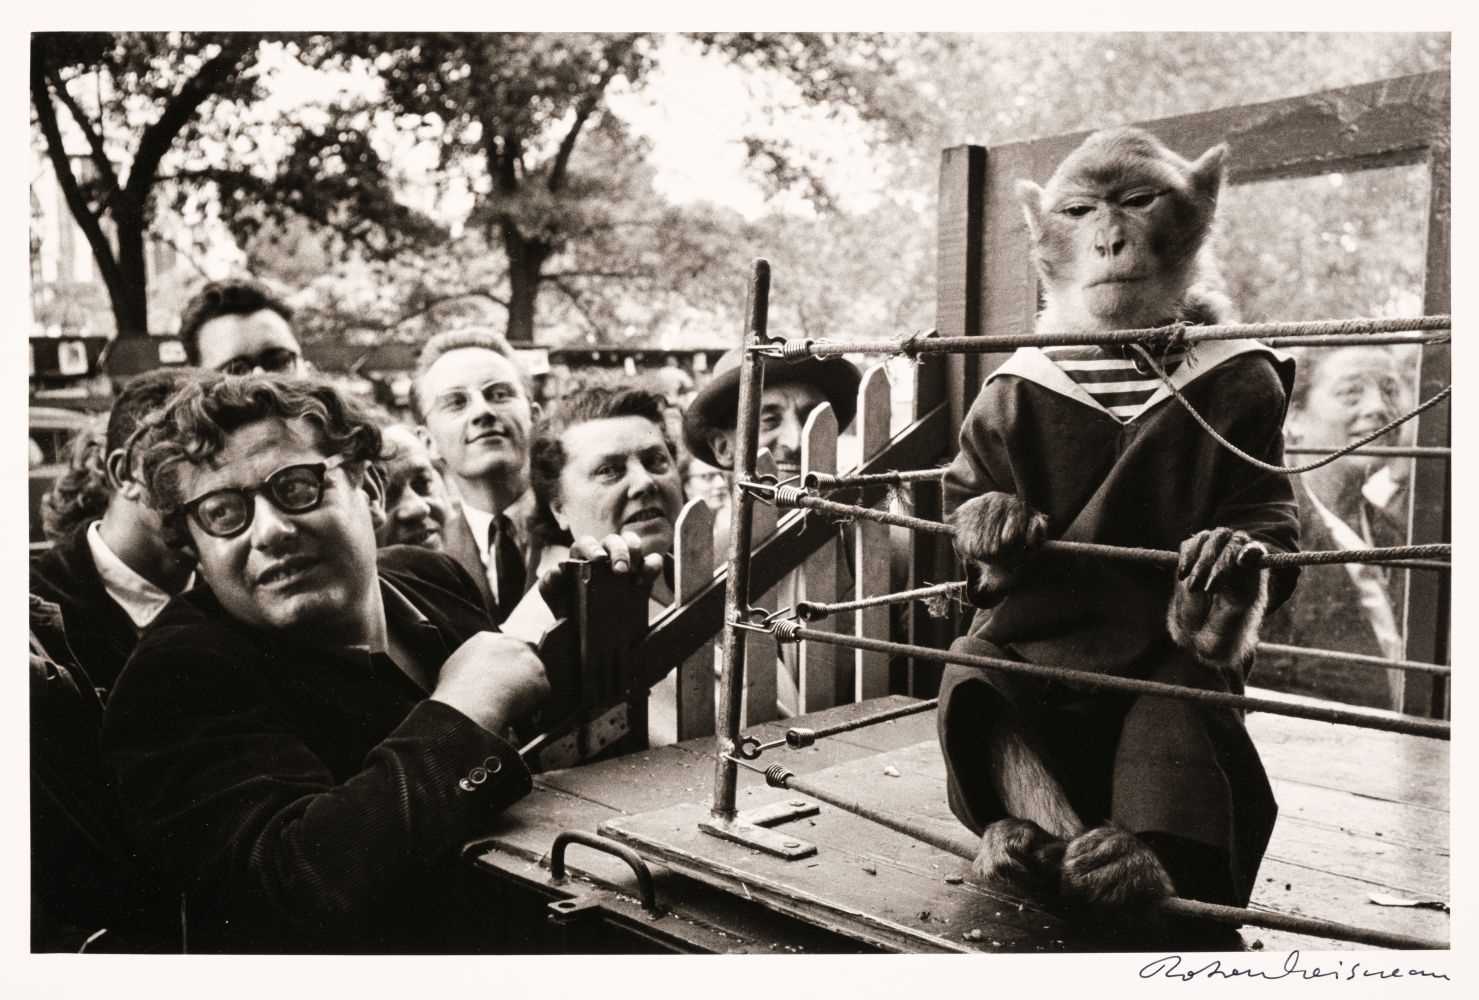 Lot 33 - Doisneau (Robert, 1912-1994). Les animaux supérieurs, Paris, 1954